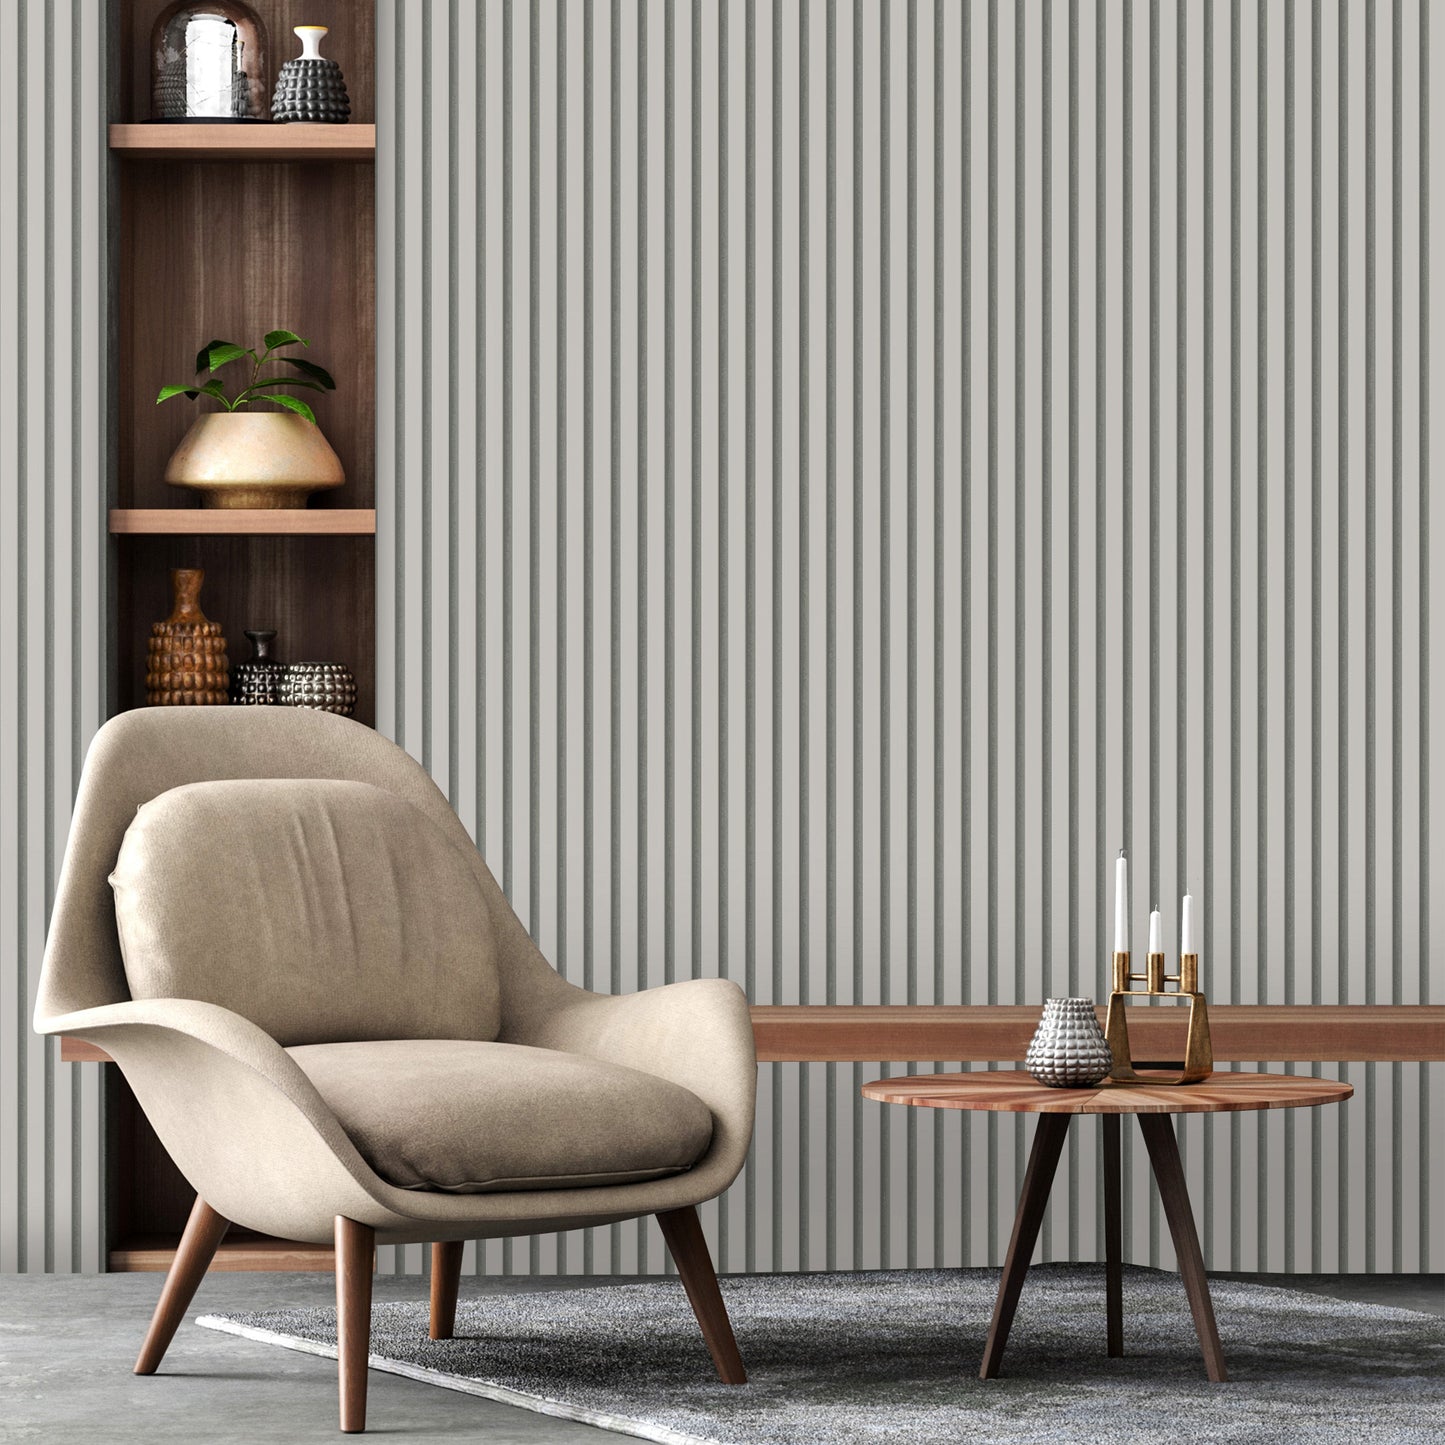 Fine Decor Acoustic Panel Wallpaper